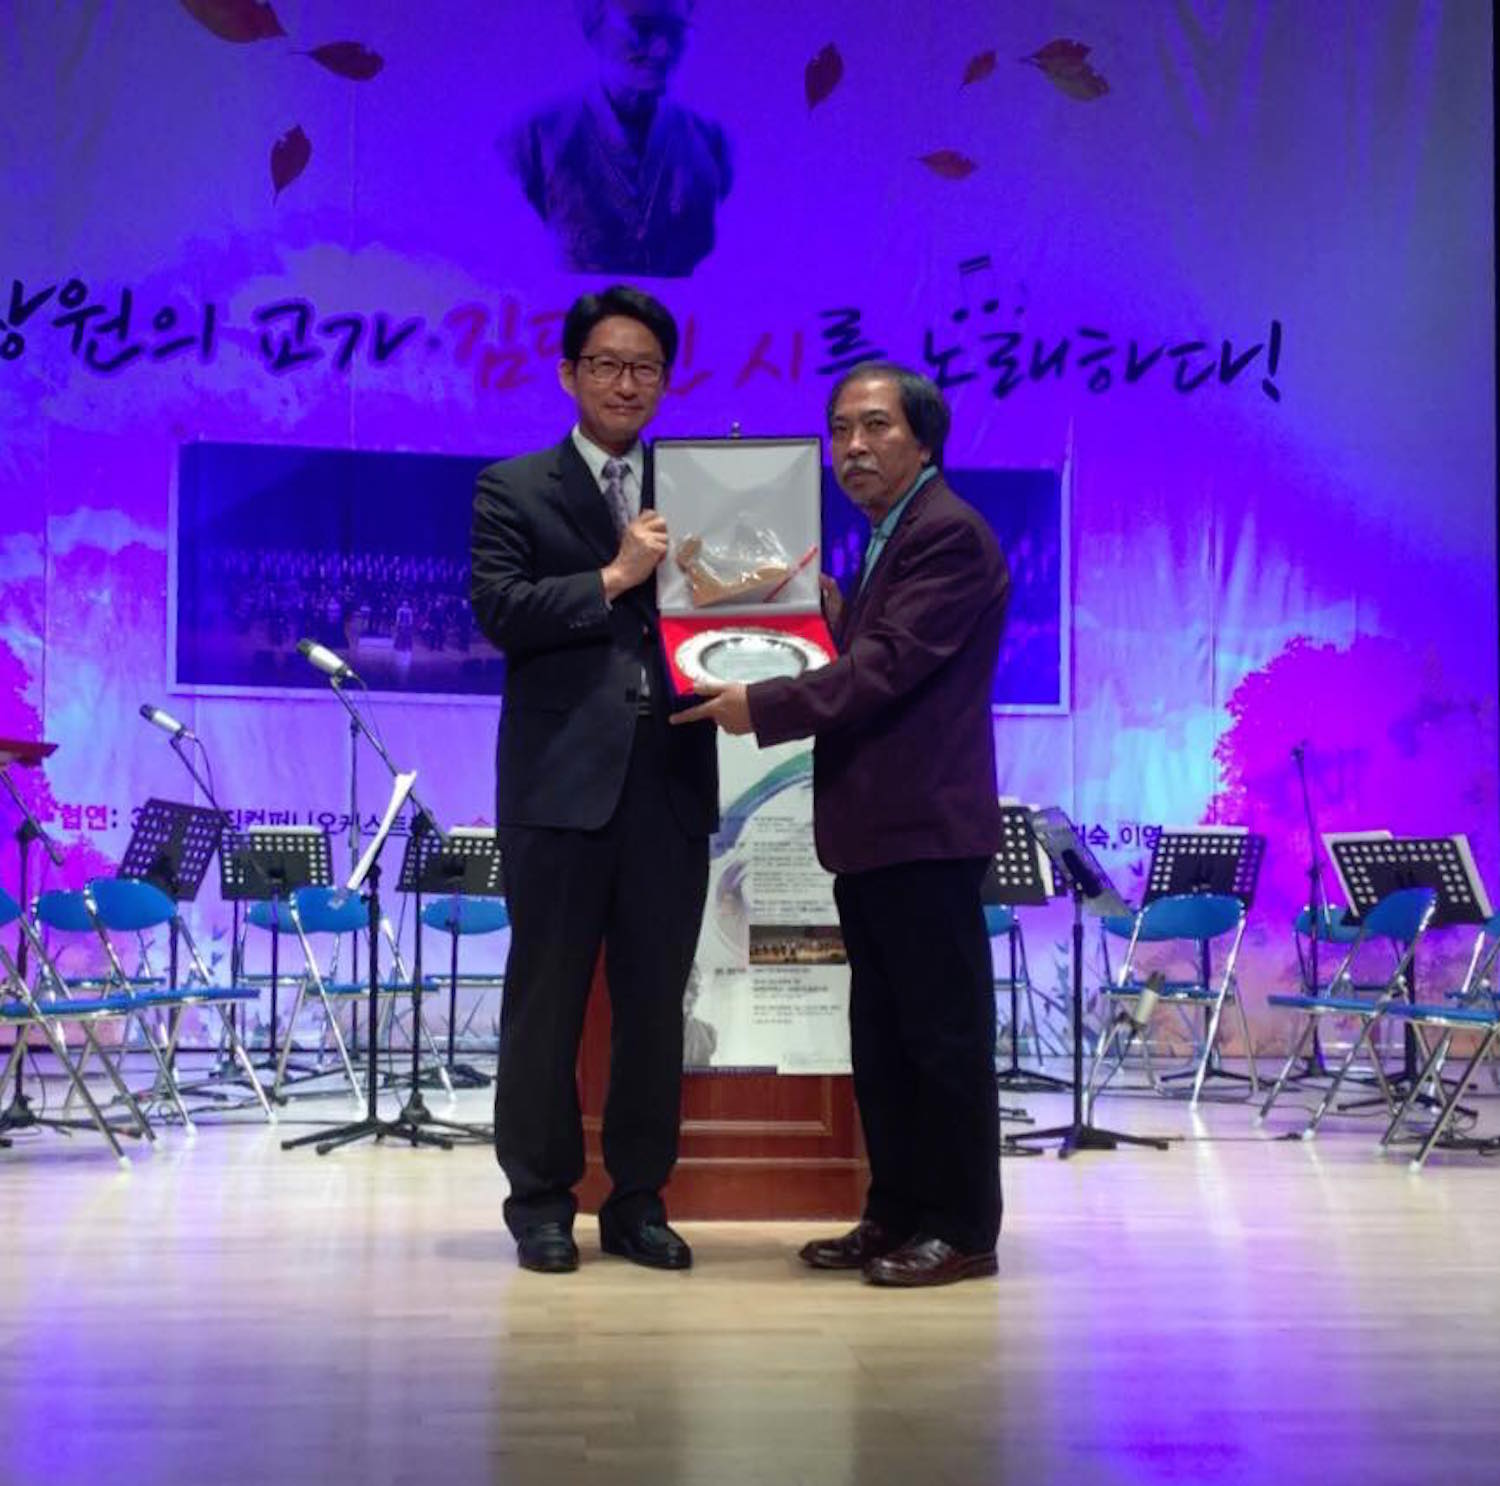 Tháng 9/2018, nhà thơ Nguyễn Quang Thiều (phải) được trao Giải thưởng Changwon KC International Literary Prize (Giải thưởng văn học quốc tế Hàn Quốc Changwon) năm 2018. (Ảnh: Nhân vật cung cấp)